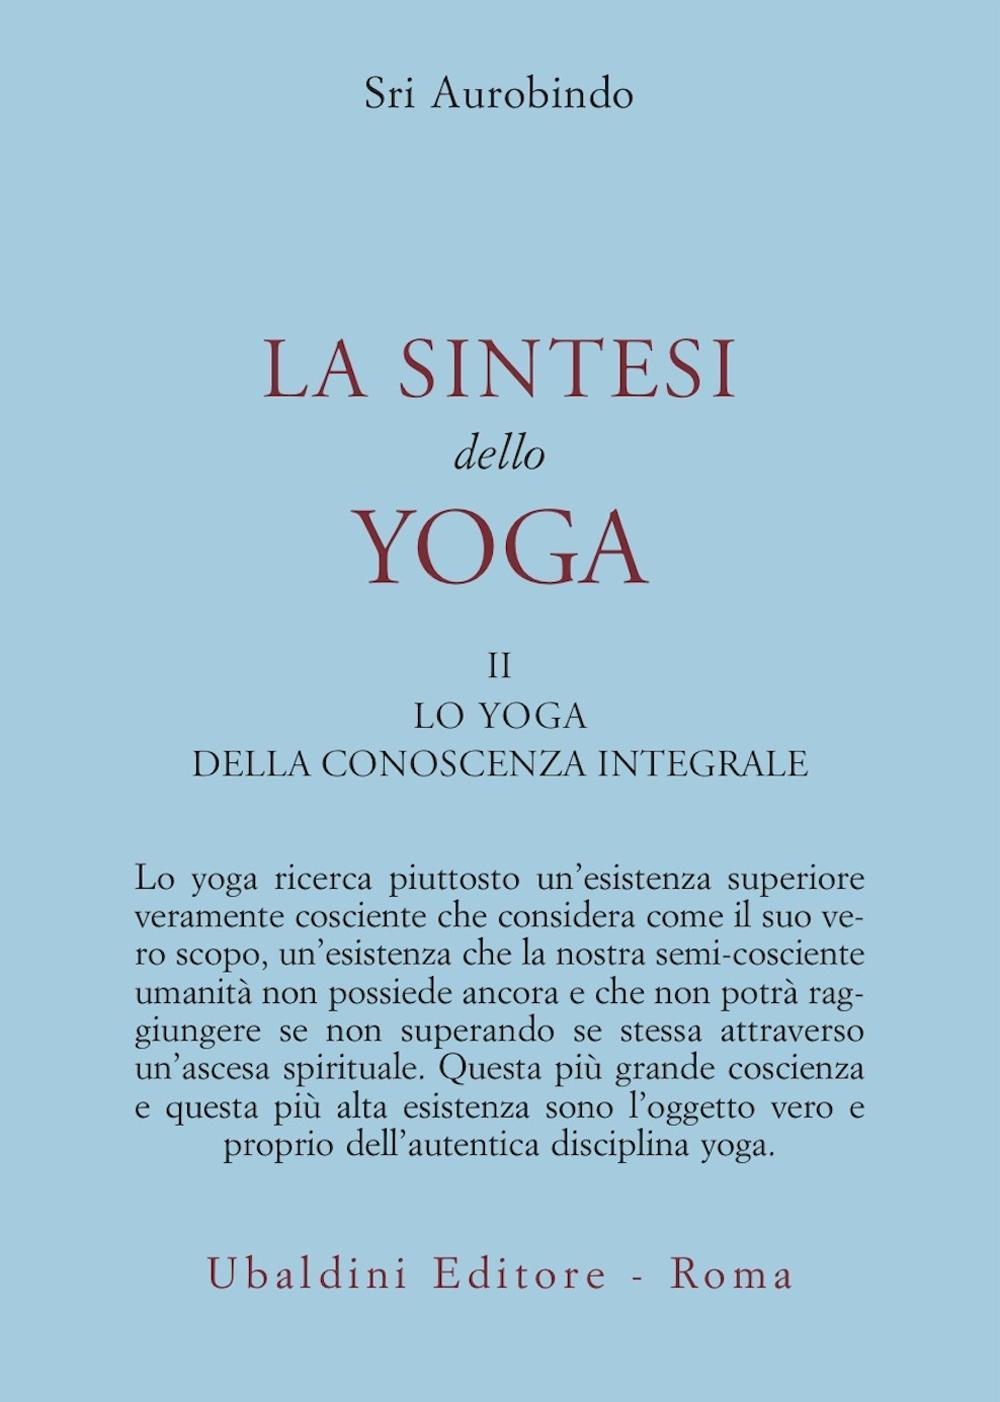 La sintesi dello yoga. Vol. 2: Lo yoga della conoscenza integrale-Lo yoga dell'amore divino